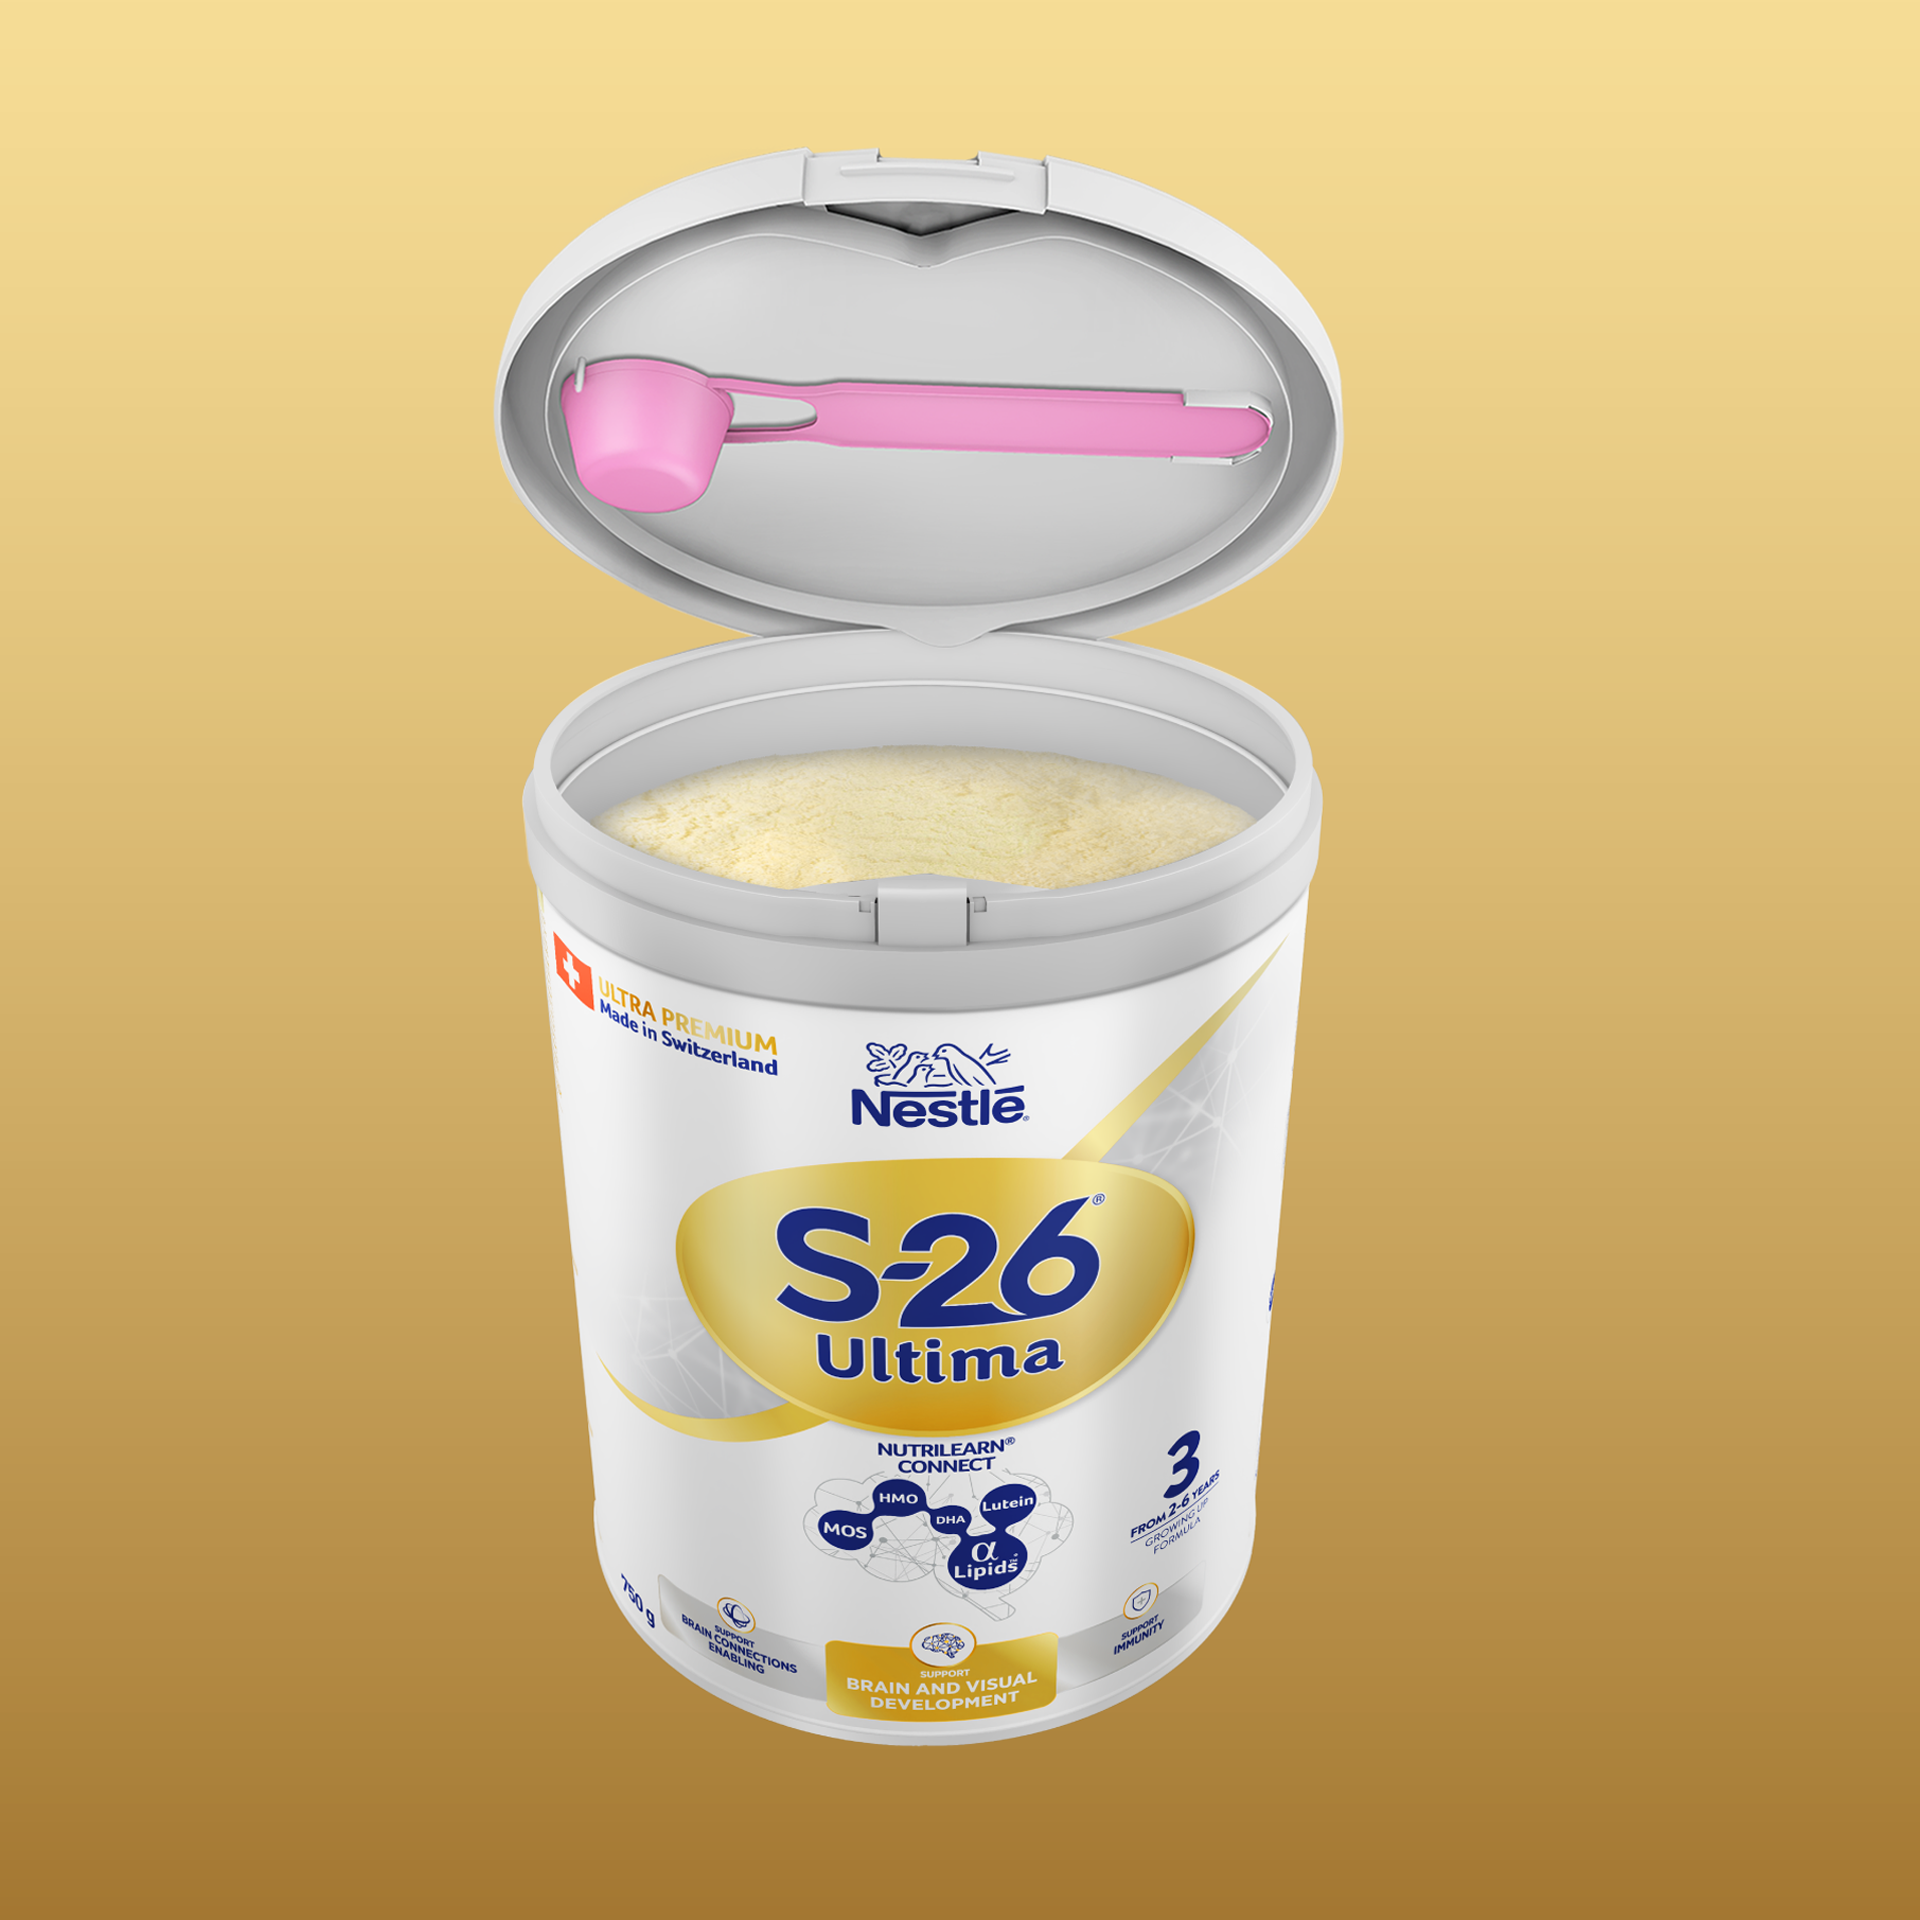 Sữa Bột Nestlé S-26 ULTIMA 3 (S26) 750G từ Thụy Sỹ độc quyền tăng tốc độ kết nối não bộ 2,5 lần với NUTRILEARN CONNECT   Tặng ​Máy massage cổ​ (2-6 tuổi)